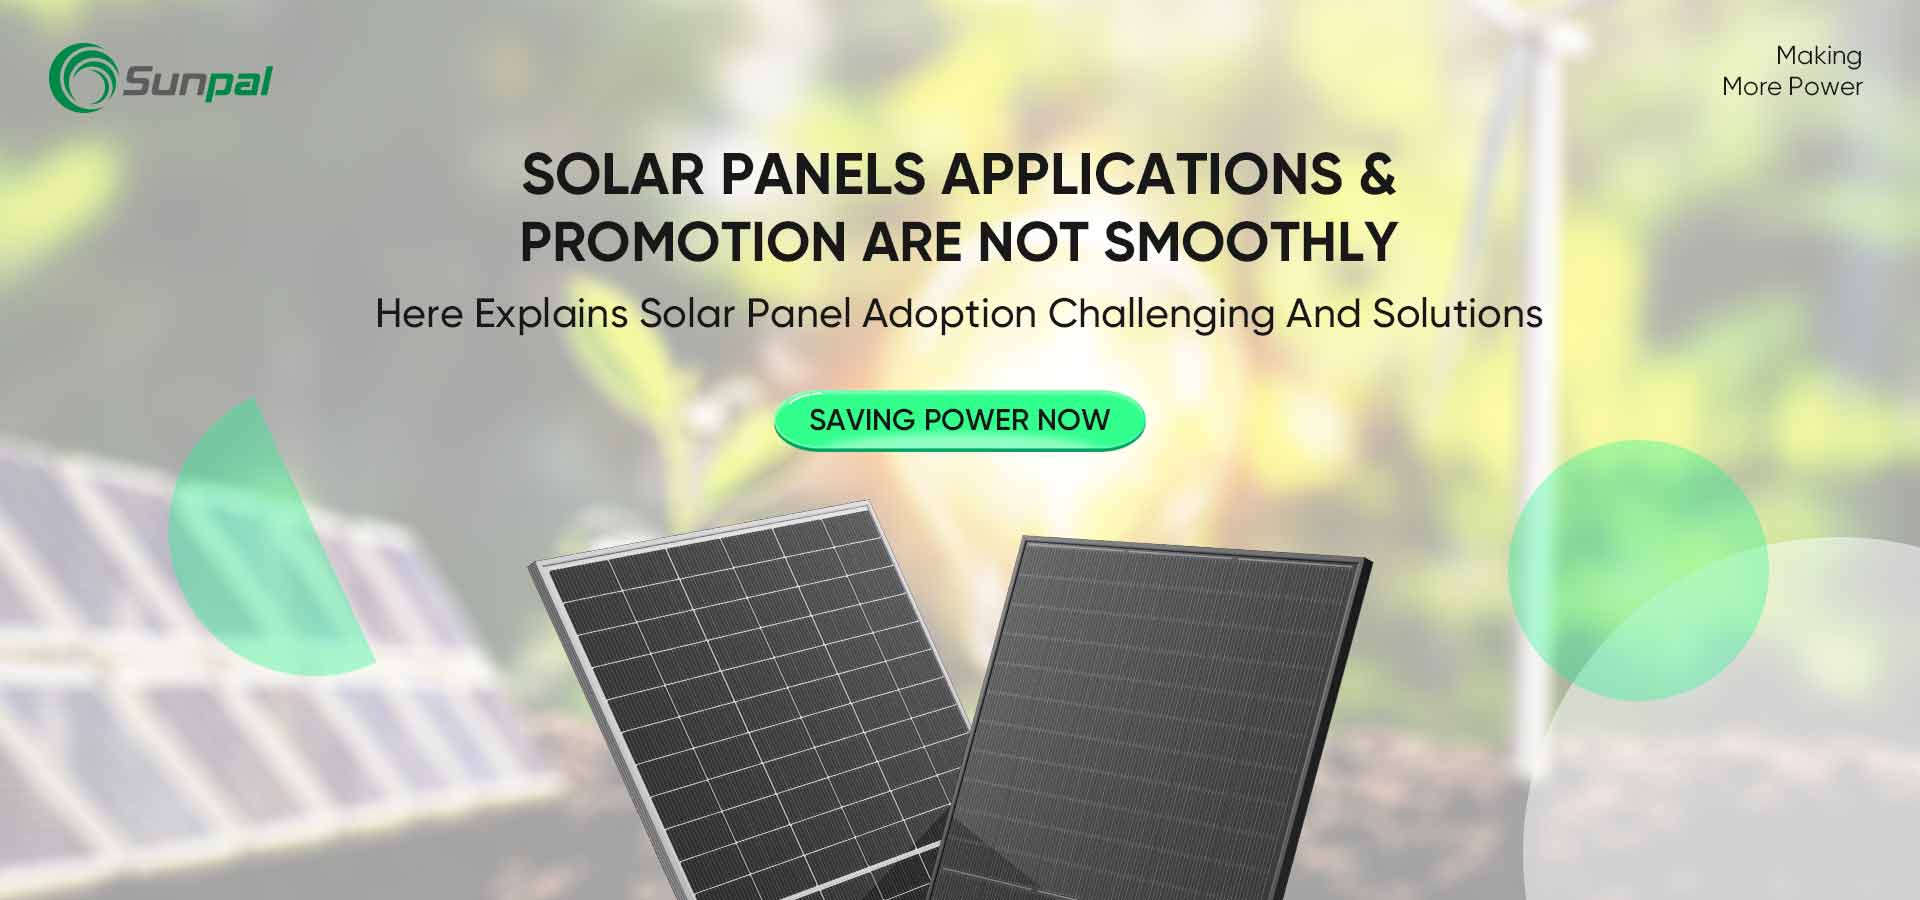 Desafiando e superando barreiras na adoção de painéis solares